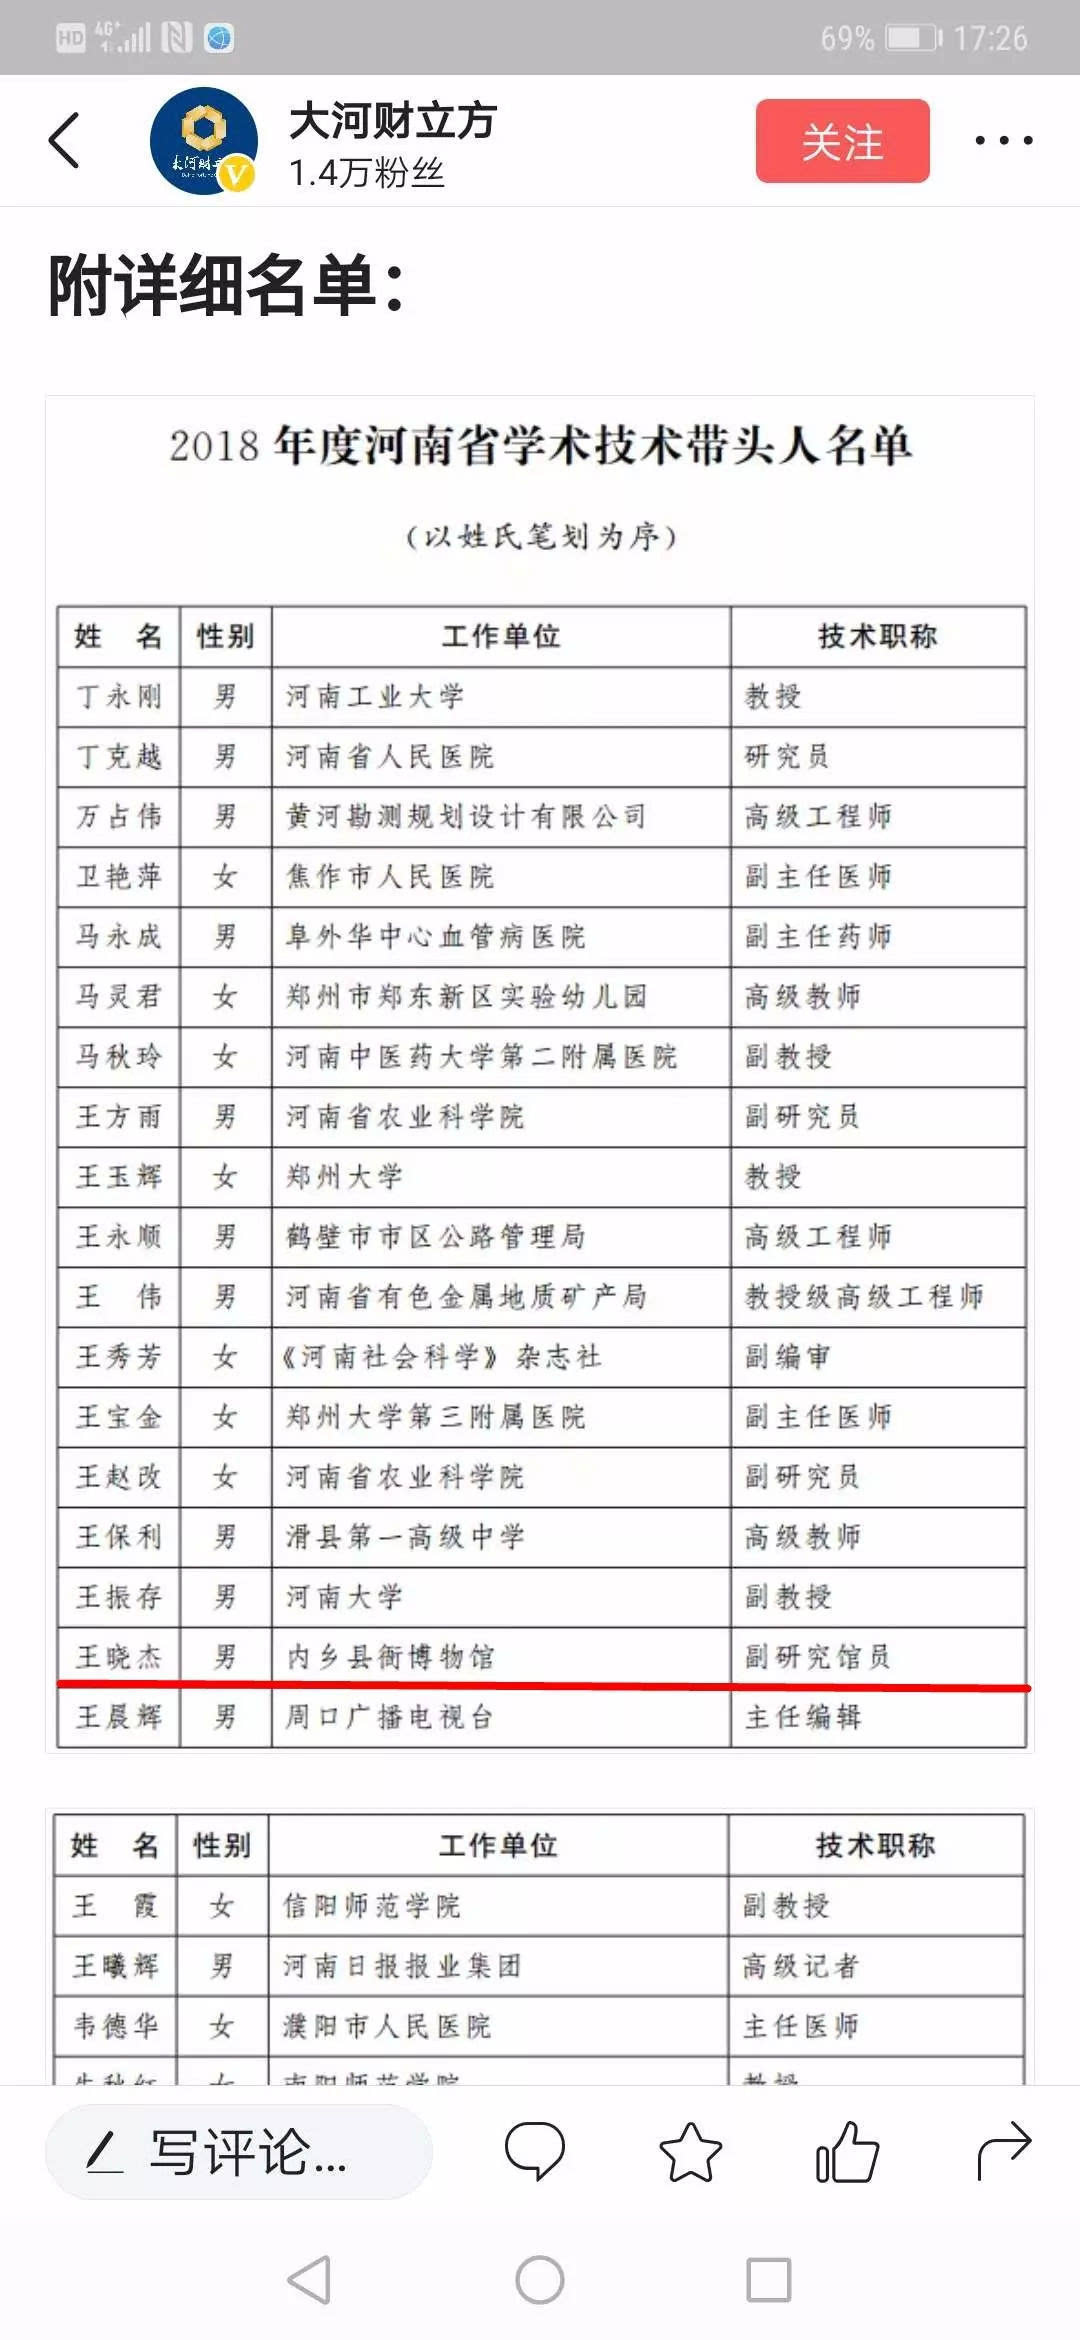 王晓杰荣获“2018年河南省学术技术带头人”荣誉称号